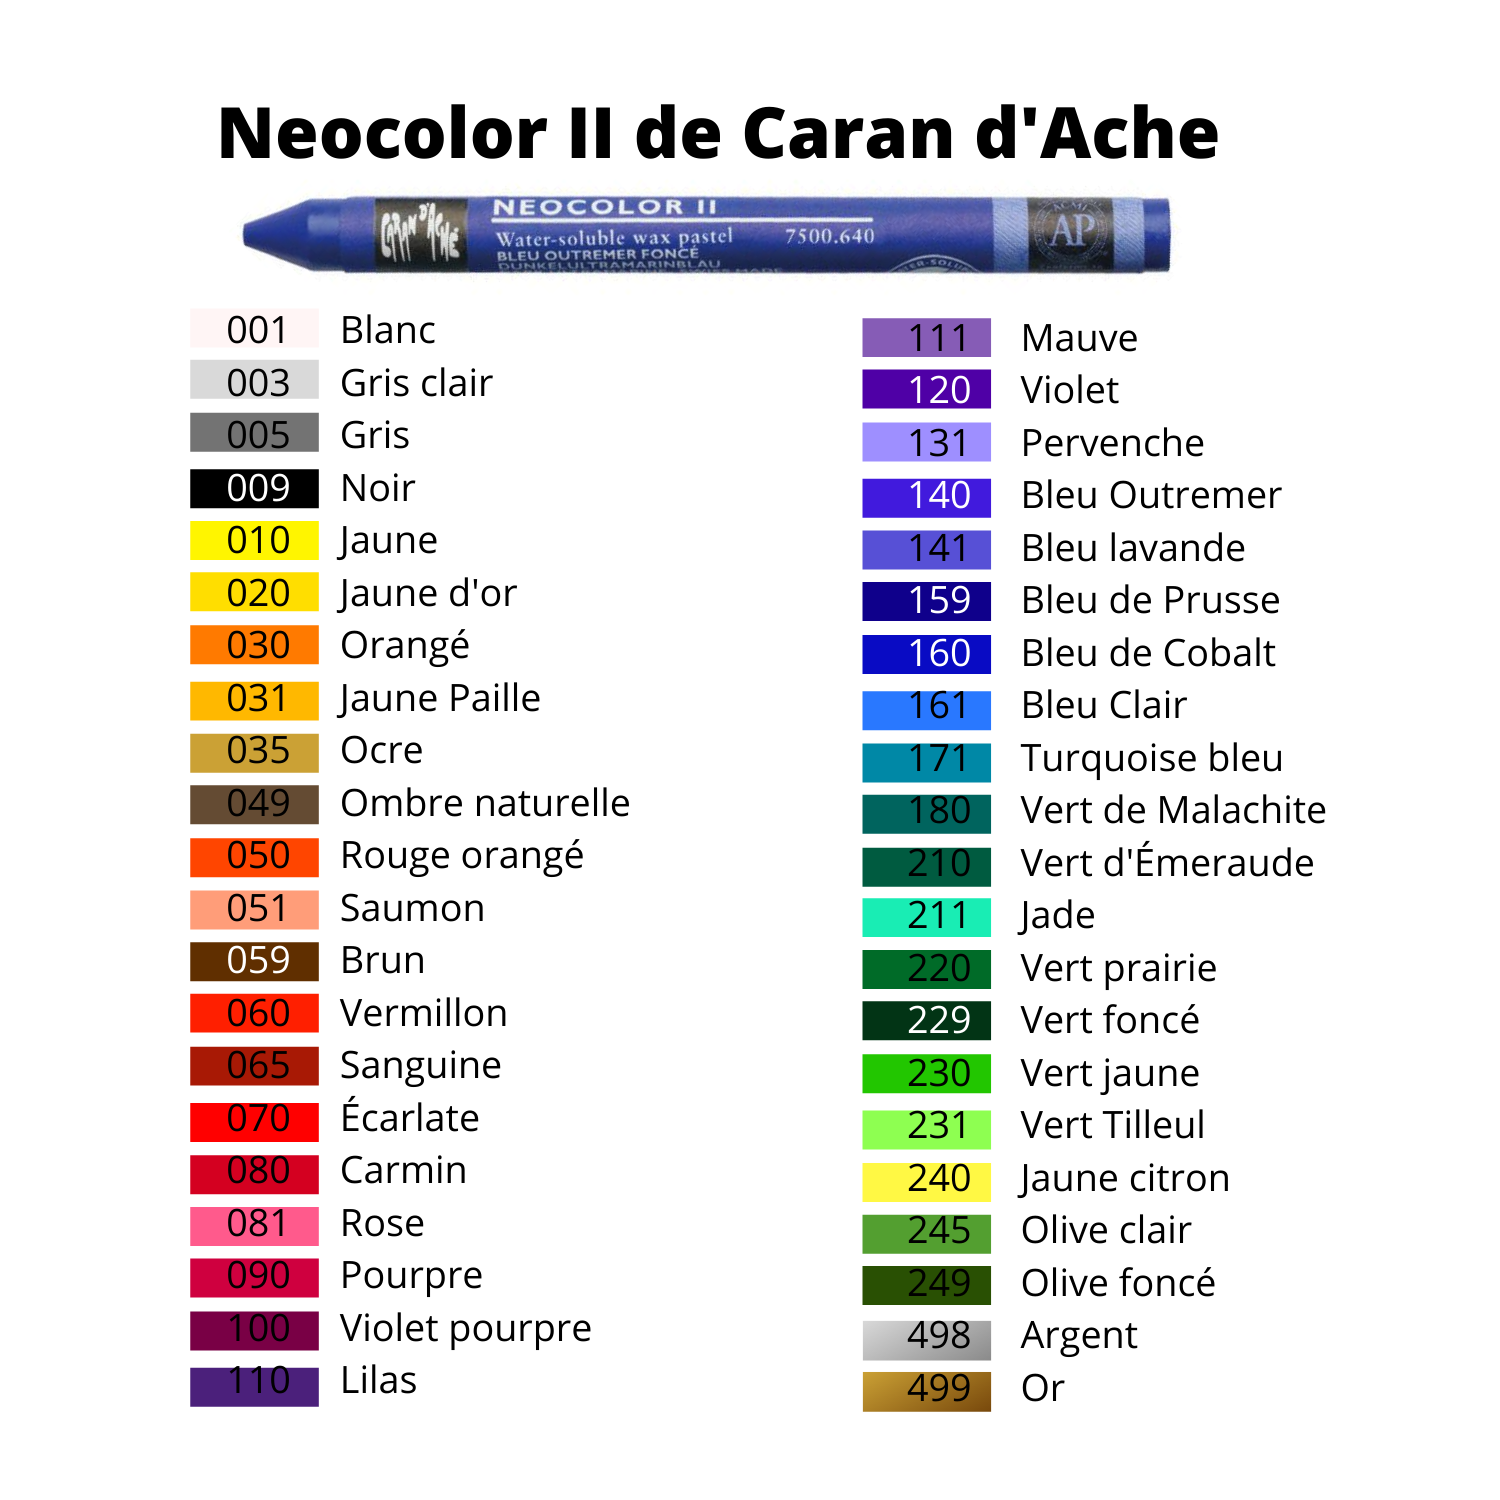 Neocolor II units - Caran d'Ache